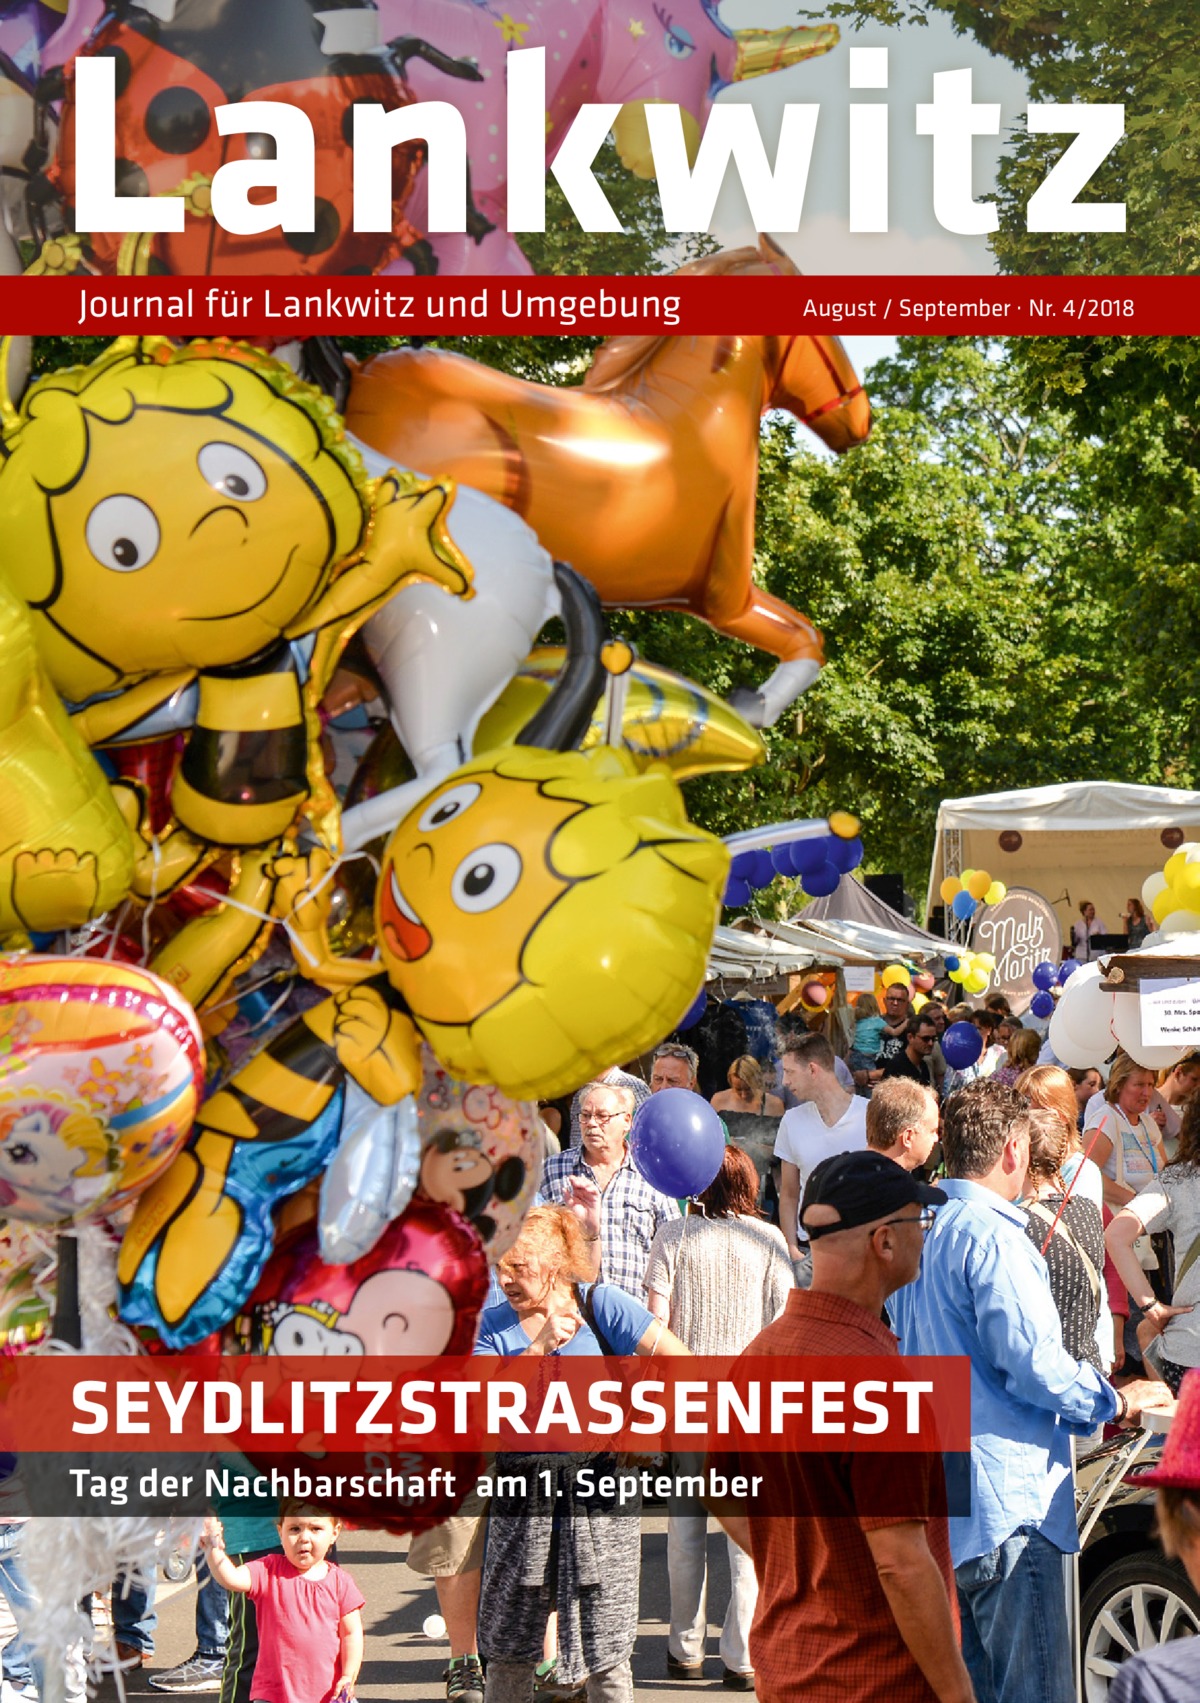 Lankwitz Journal für Lankwitz und Umgebung  August / September · Nr. 4/2018  SEYDLITZSTRASSENFEST Tag der Nachbarschaft am 1. September